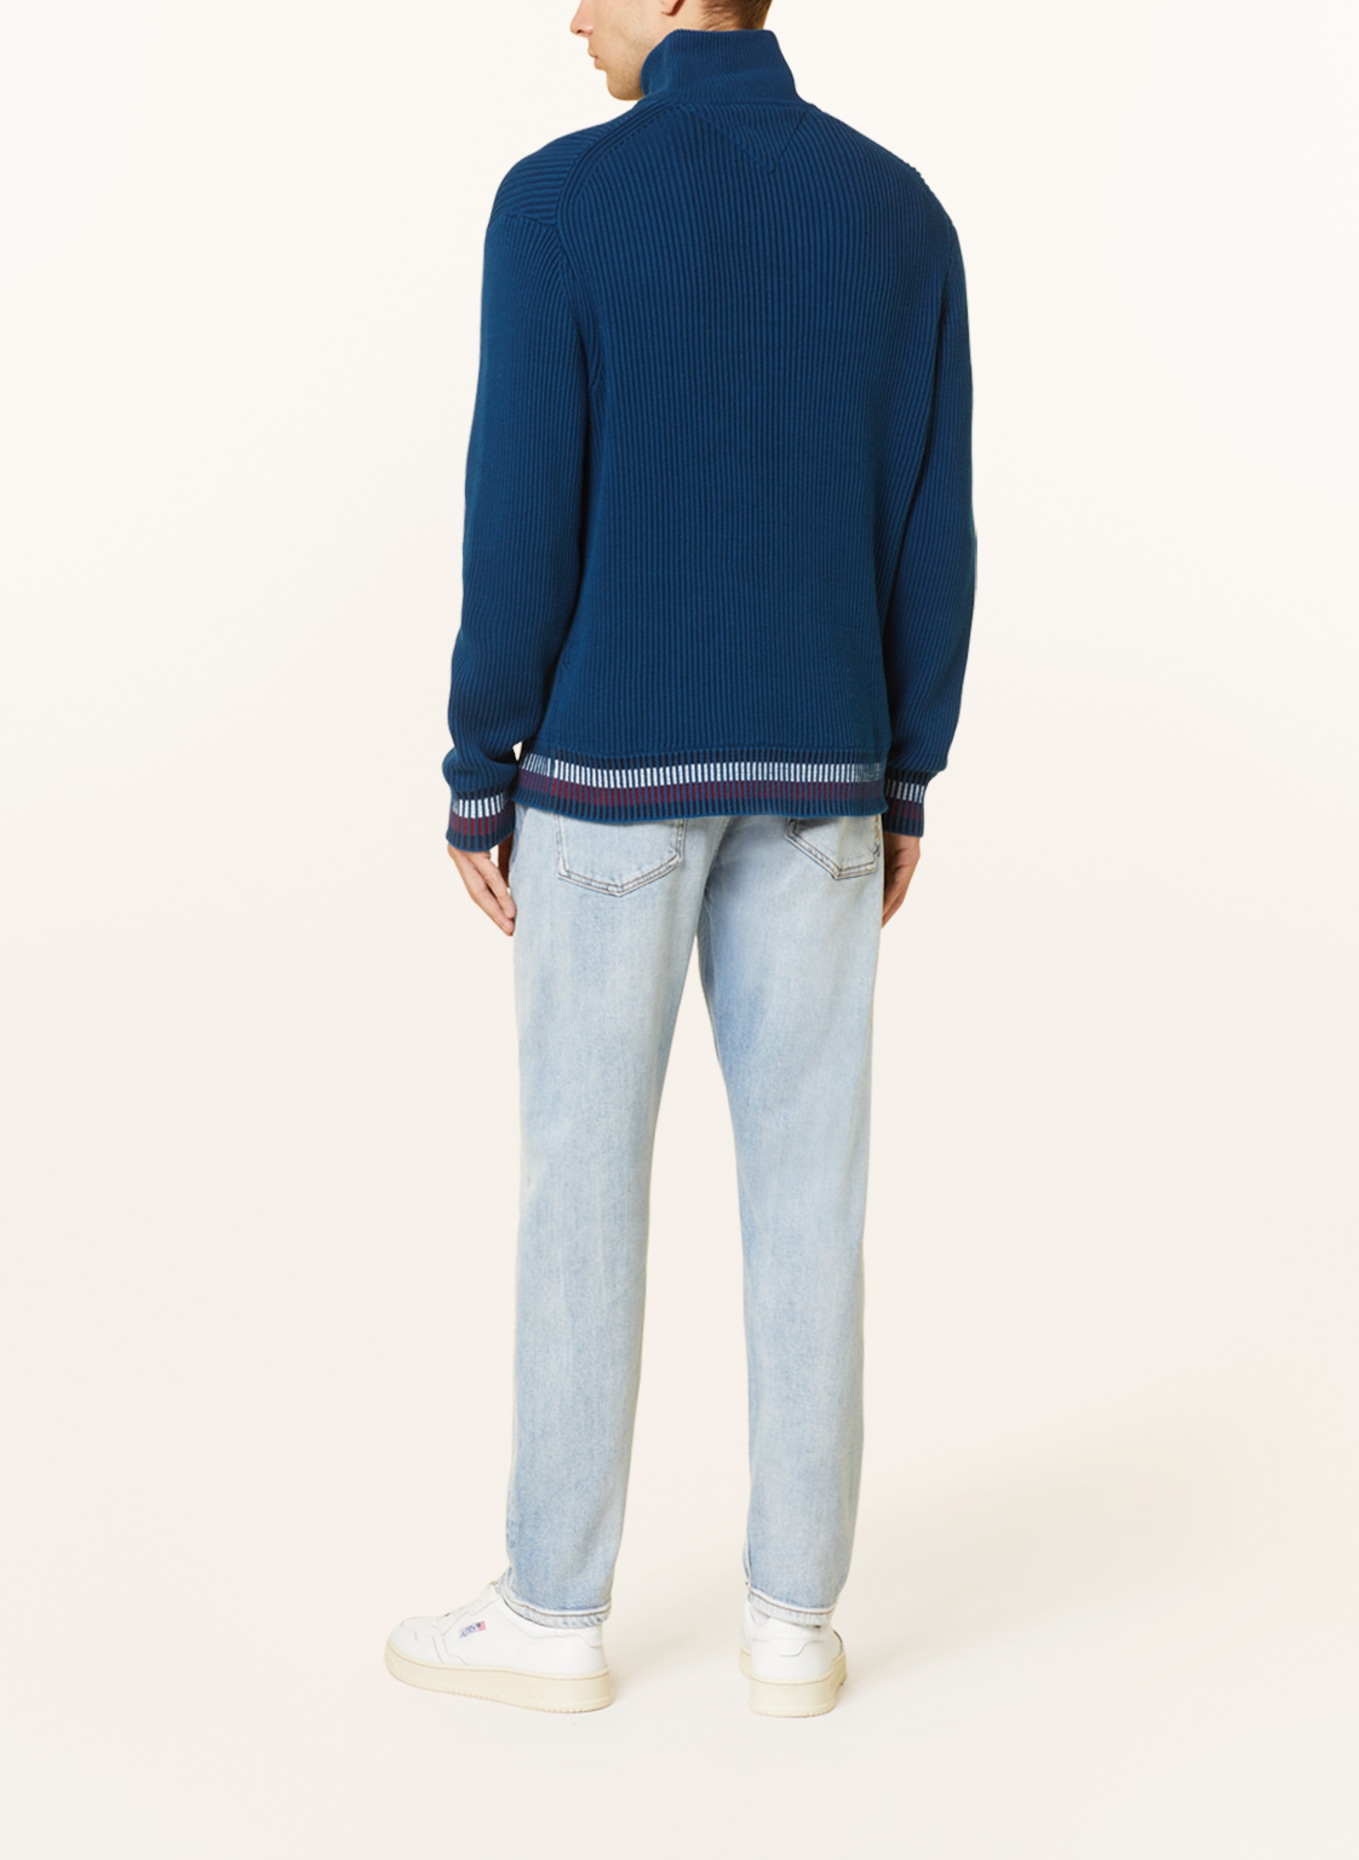 TOMMY HILFIGER Half-zip sweater, Color: BLUE (Image 3)